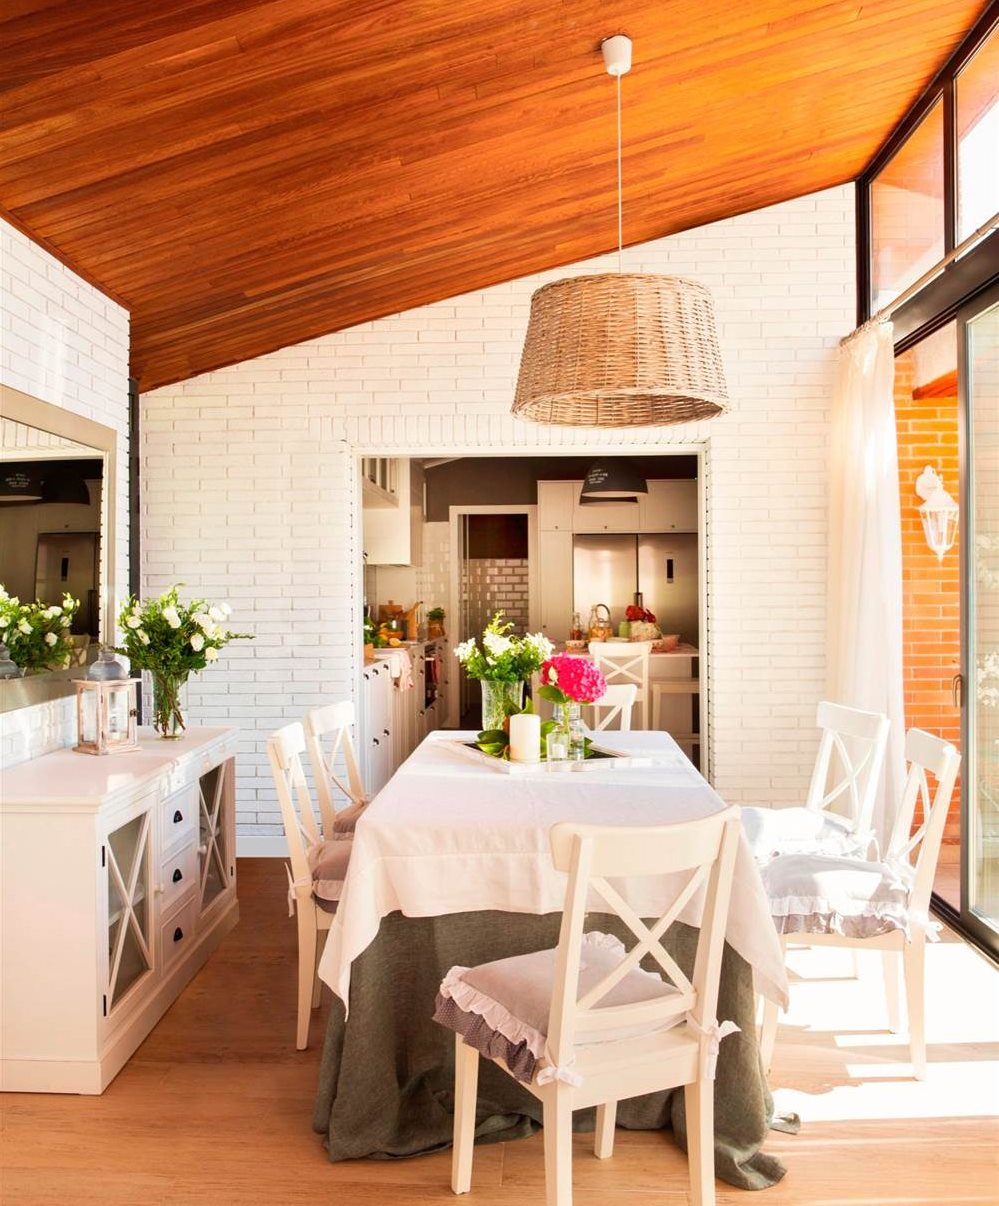 Comedor con acceso a la cocina con pared de ladrillo blanco, cómoda, espejo, techo de madera, lámpara de fibra